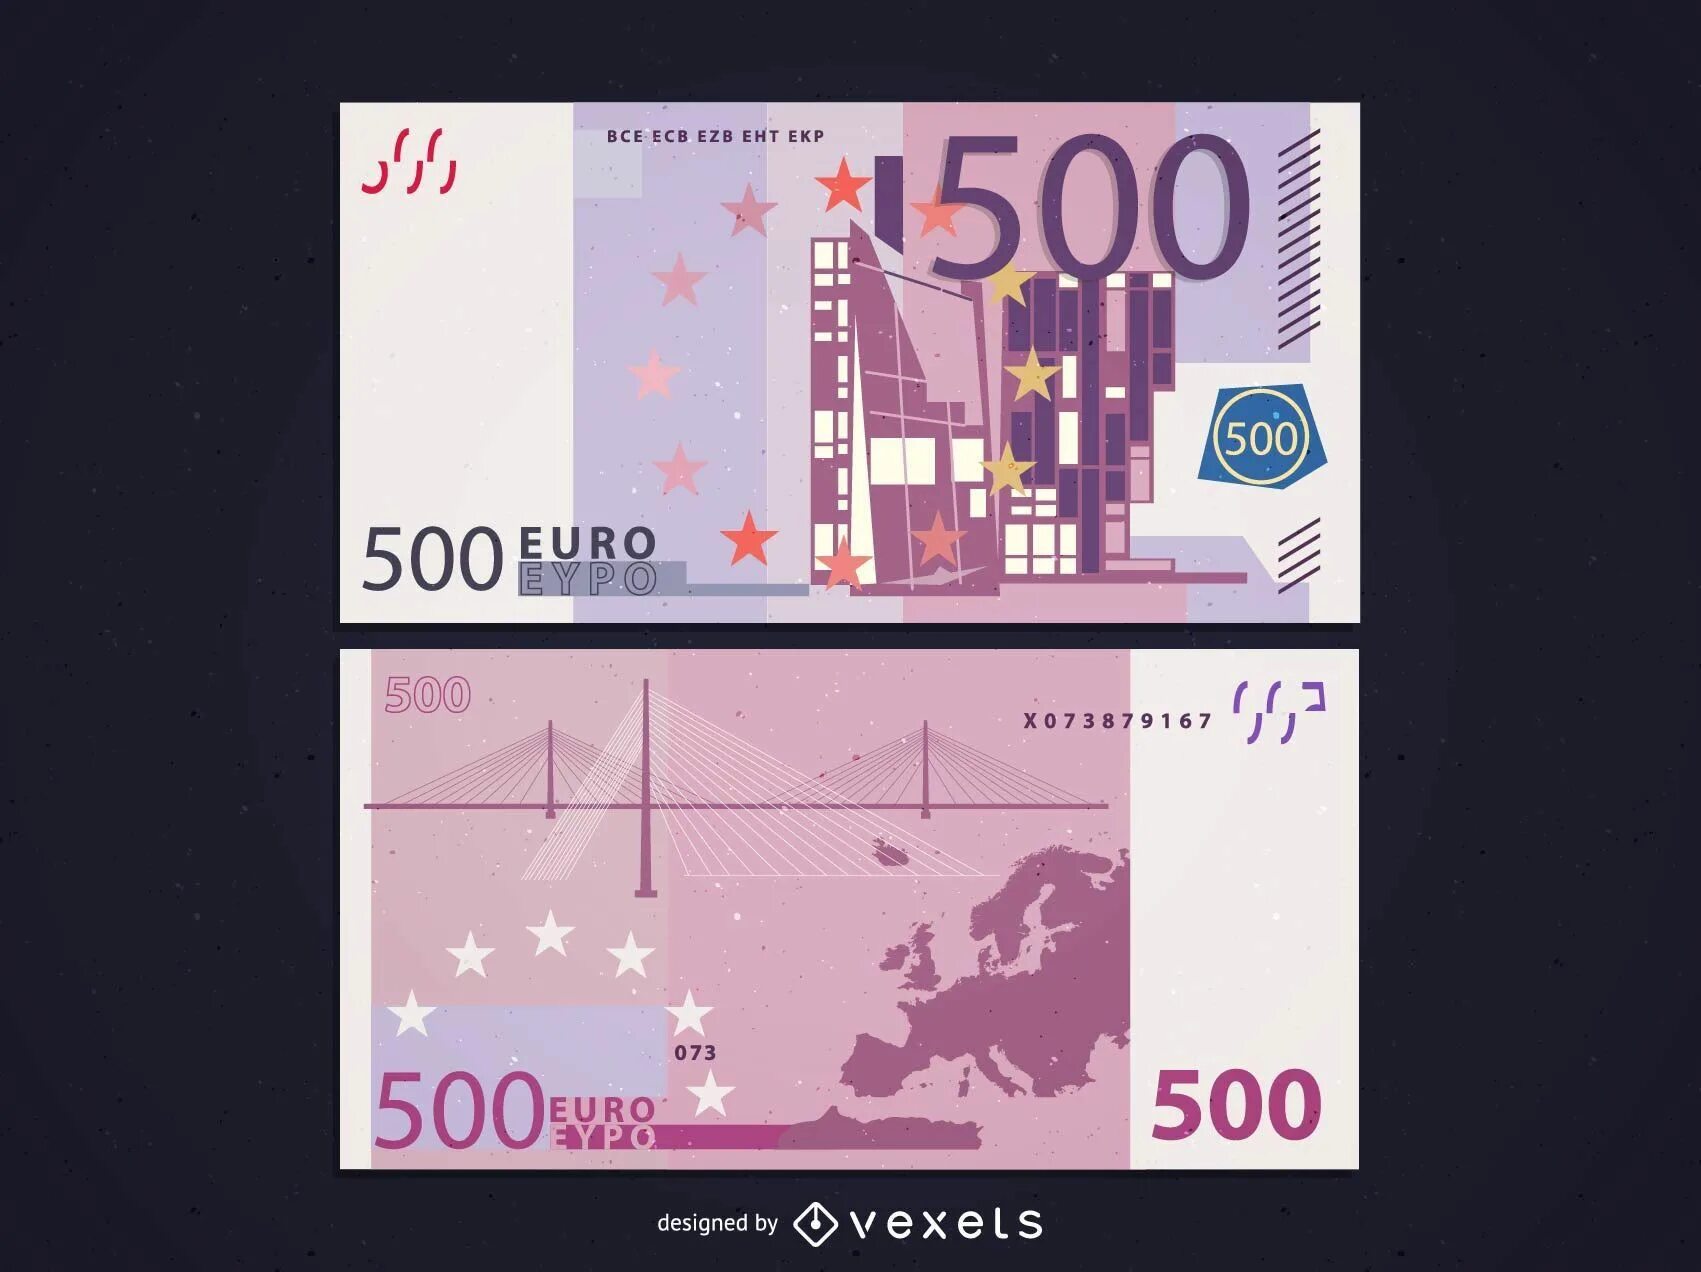 Банкноты евро 500. Купюра 500 евро. 500 Евро купюра с двух сторон. 500 Евро изображение. Образцы евро купюр